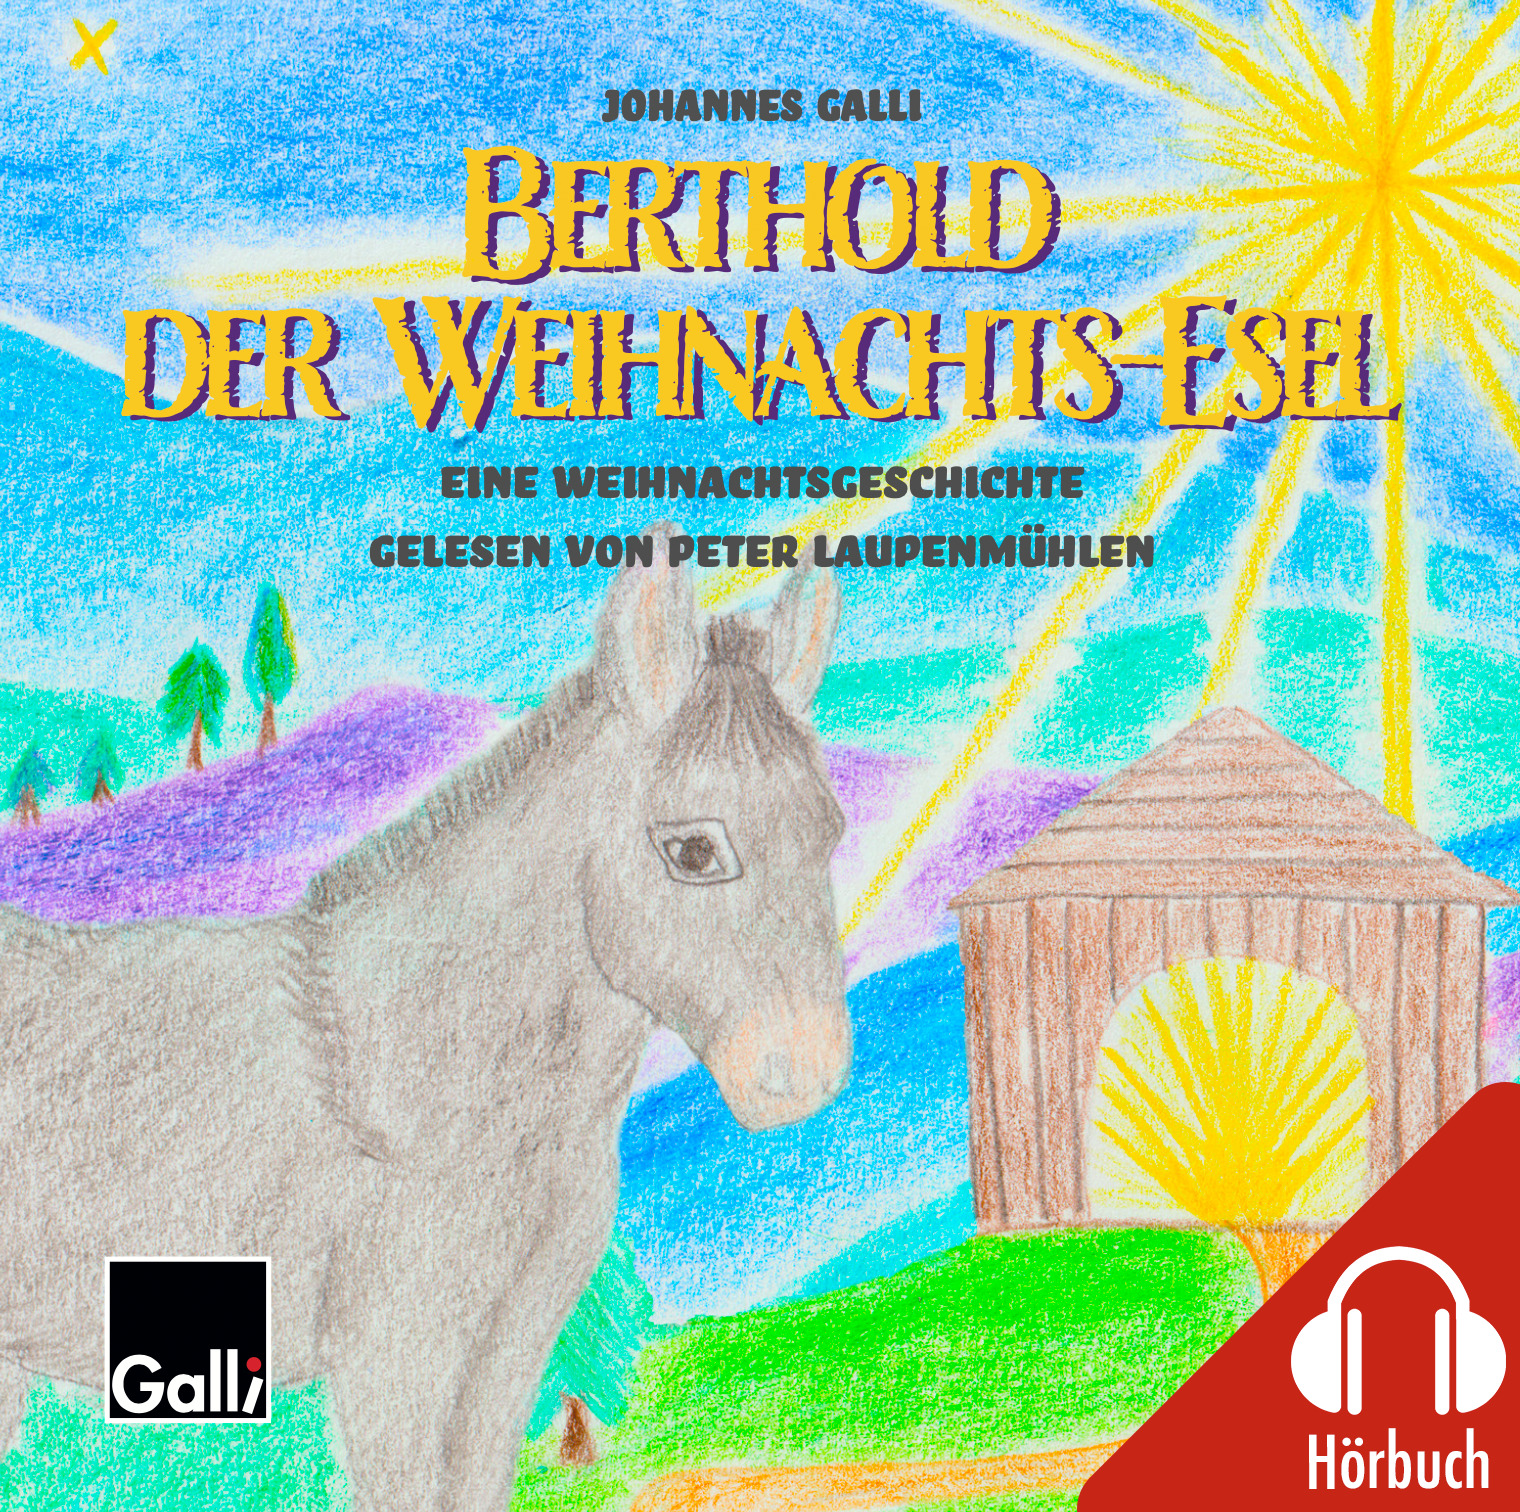 Hörbuch: Berthold der Weihnachts-Esel